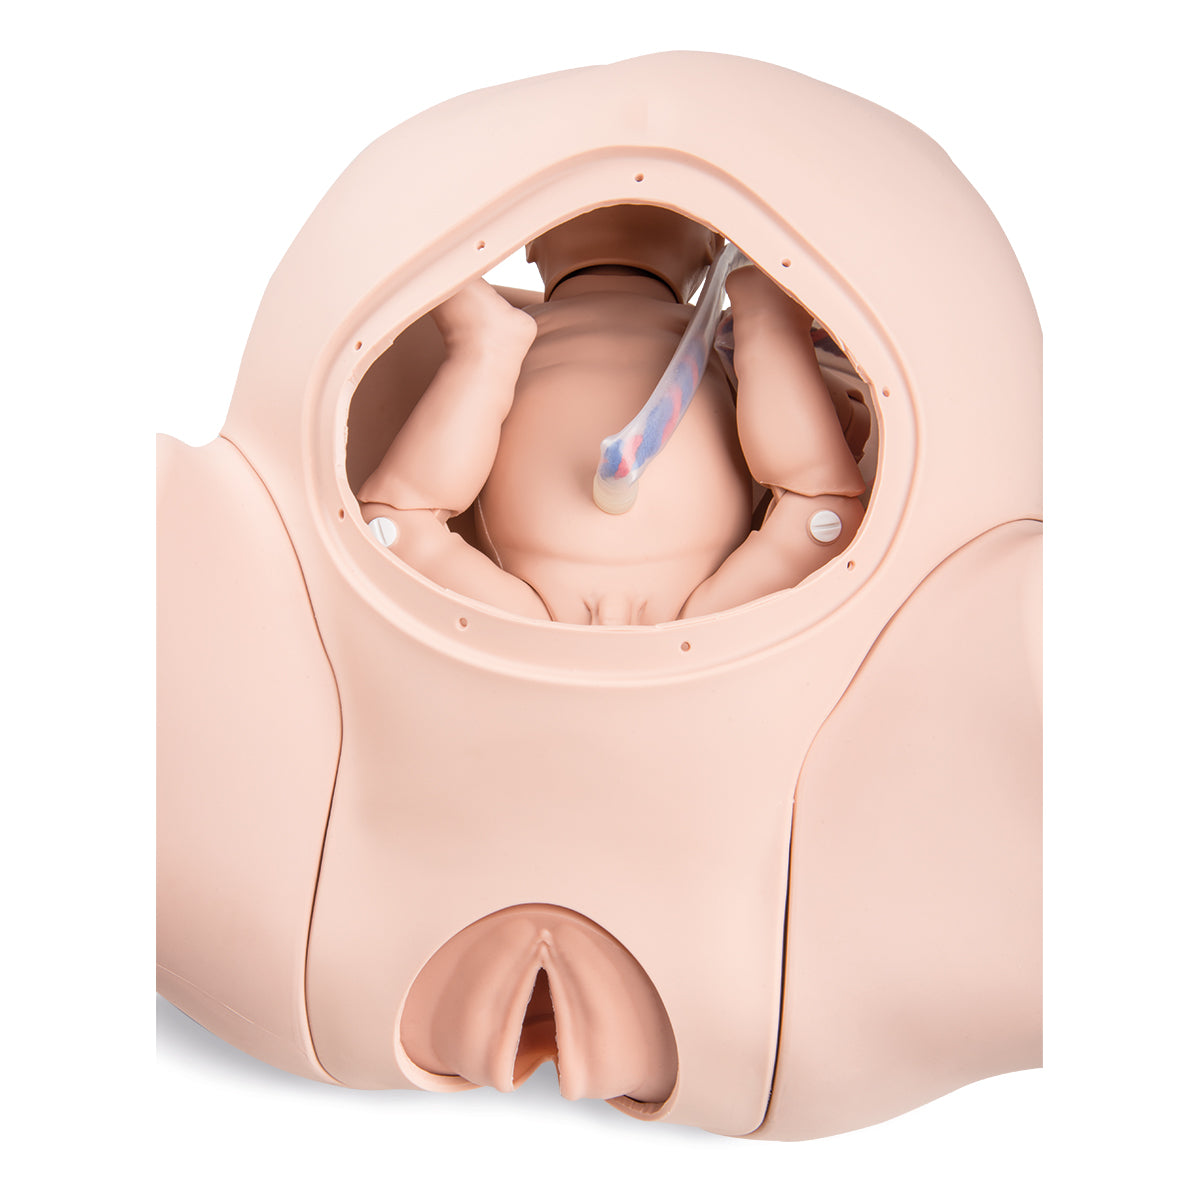 Praktisk fødselssimulator PRO målrettet træning i ukomplicerede og komplicerede fødsler m.m.